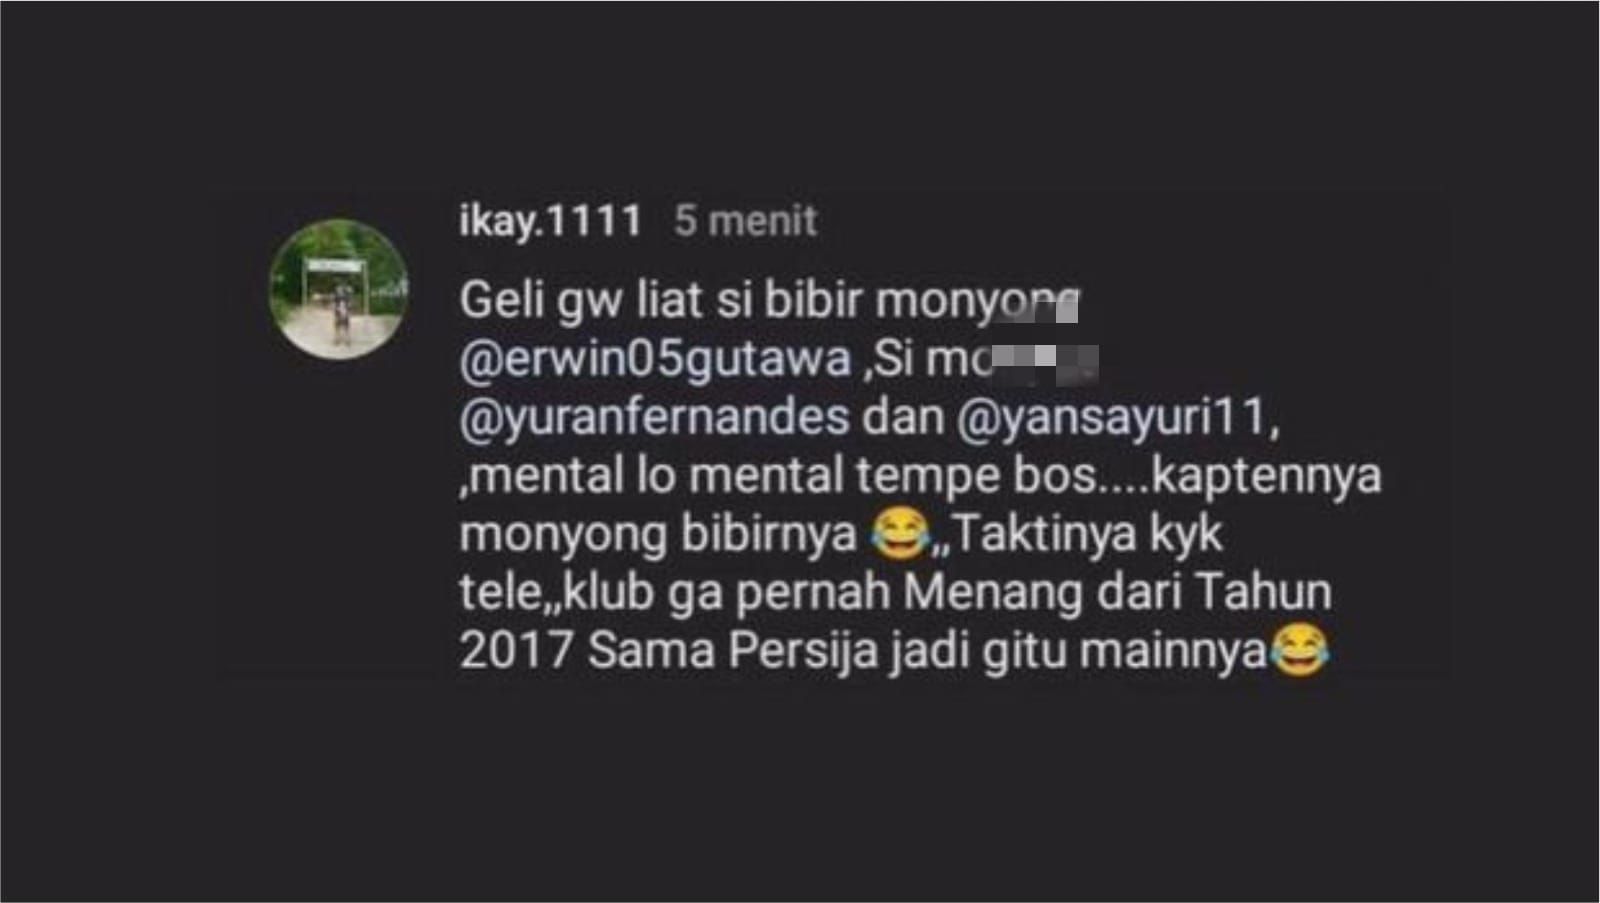 Ujaran rasis yang dilontarkan oleh salah satu akun setelah akun offisial PSM Makassar mengunggah foto pertandingan melawan Persija Jakarta.*/Instagram.com/@ikai.1111 